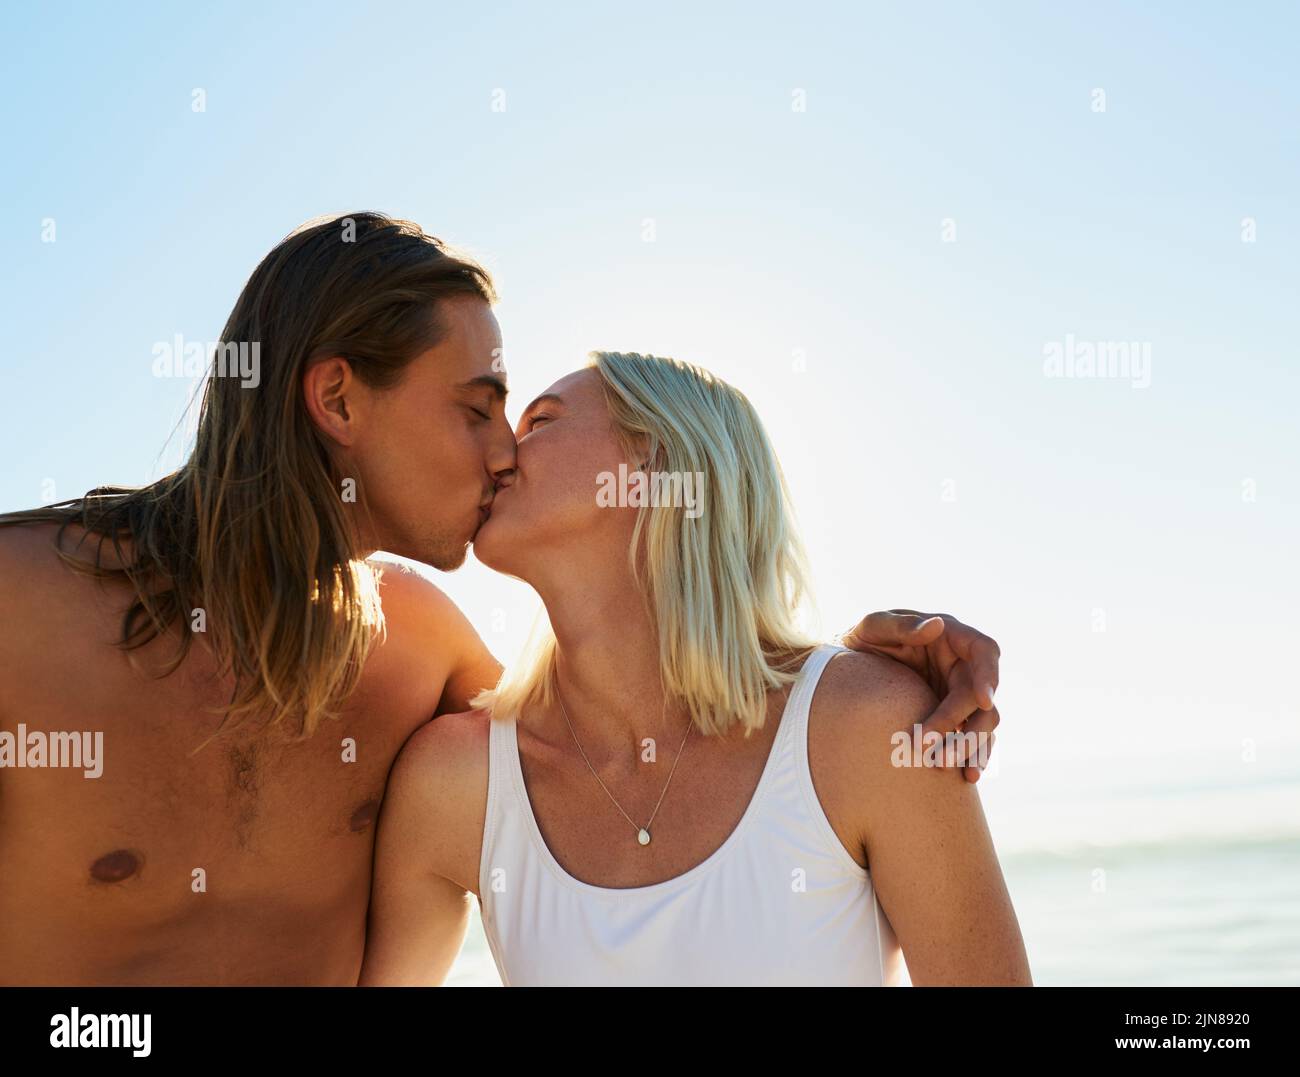 Notre amour est tout ce qui compte. Un jeune couple affectueux s'embrassant les uns les autres à la plage. Banque D'Images